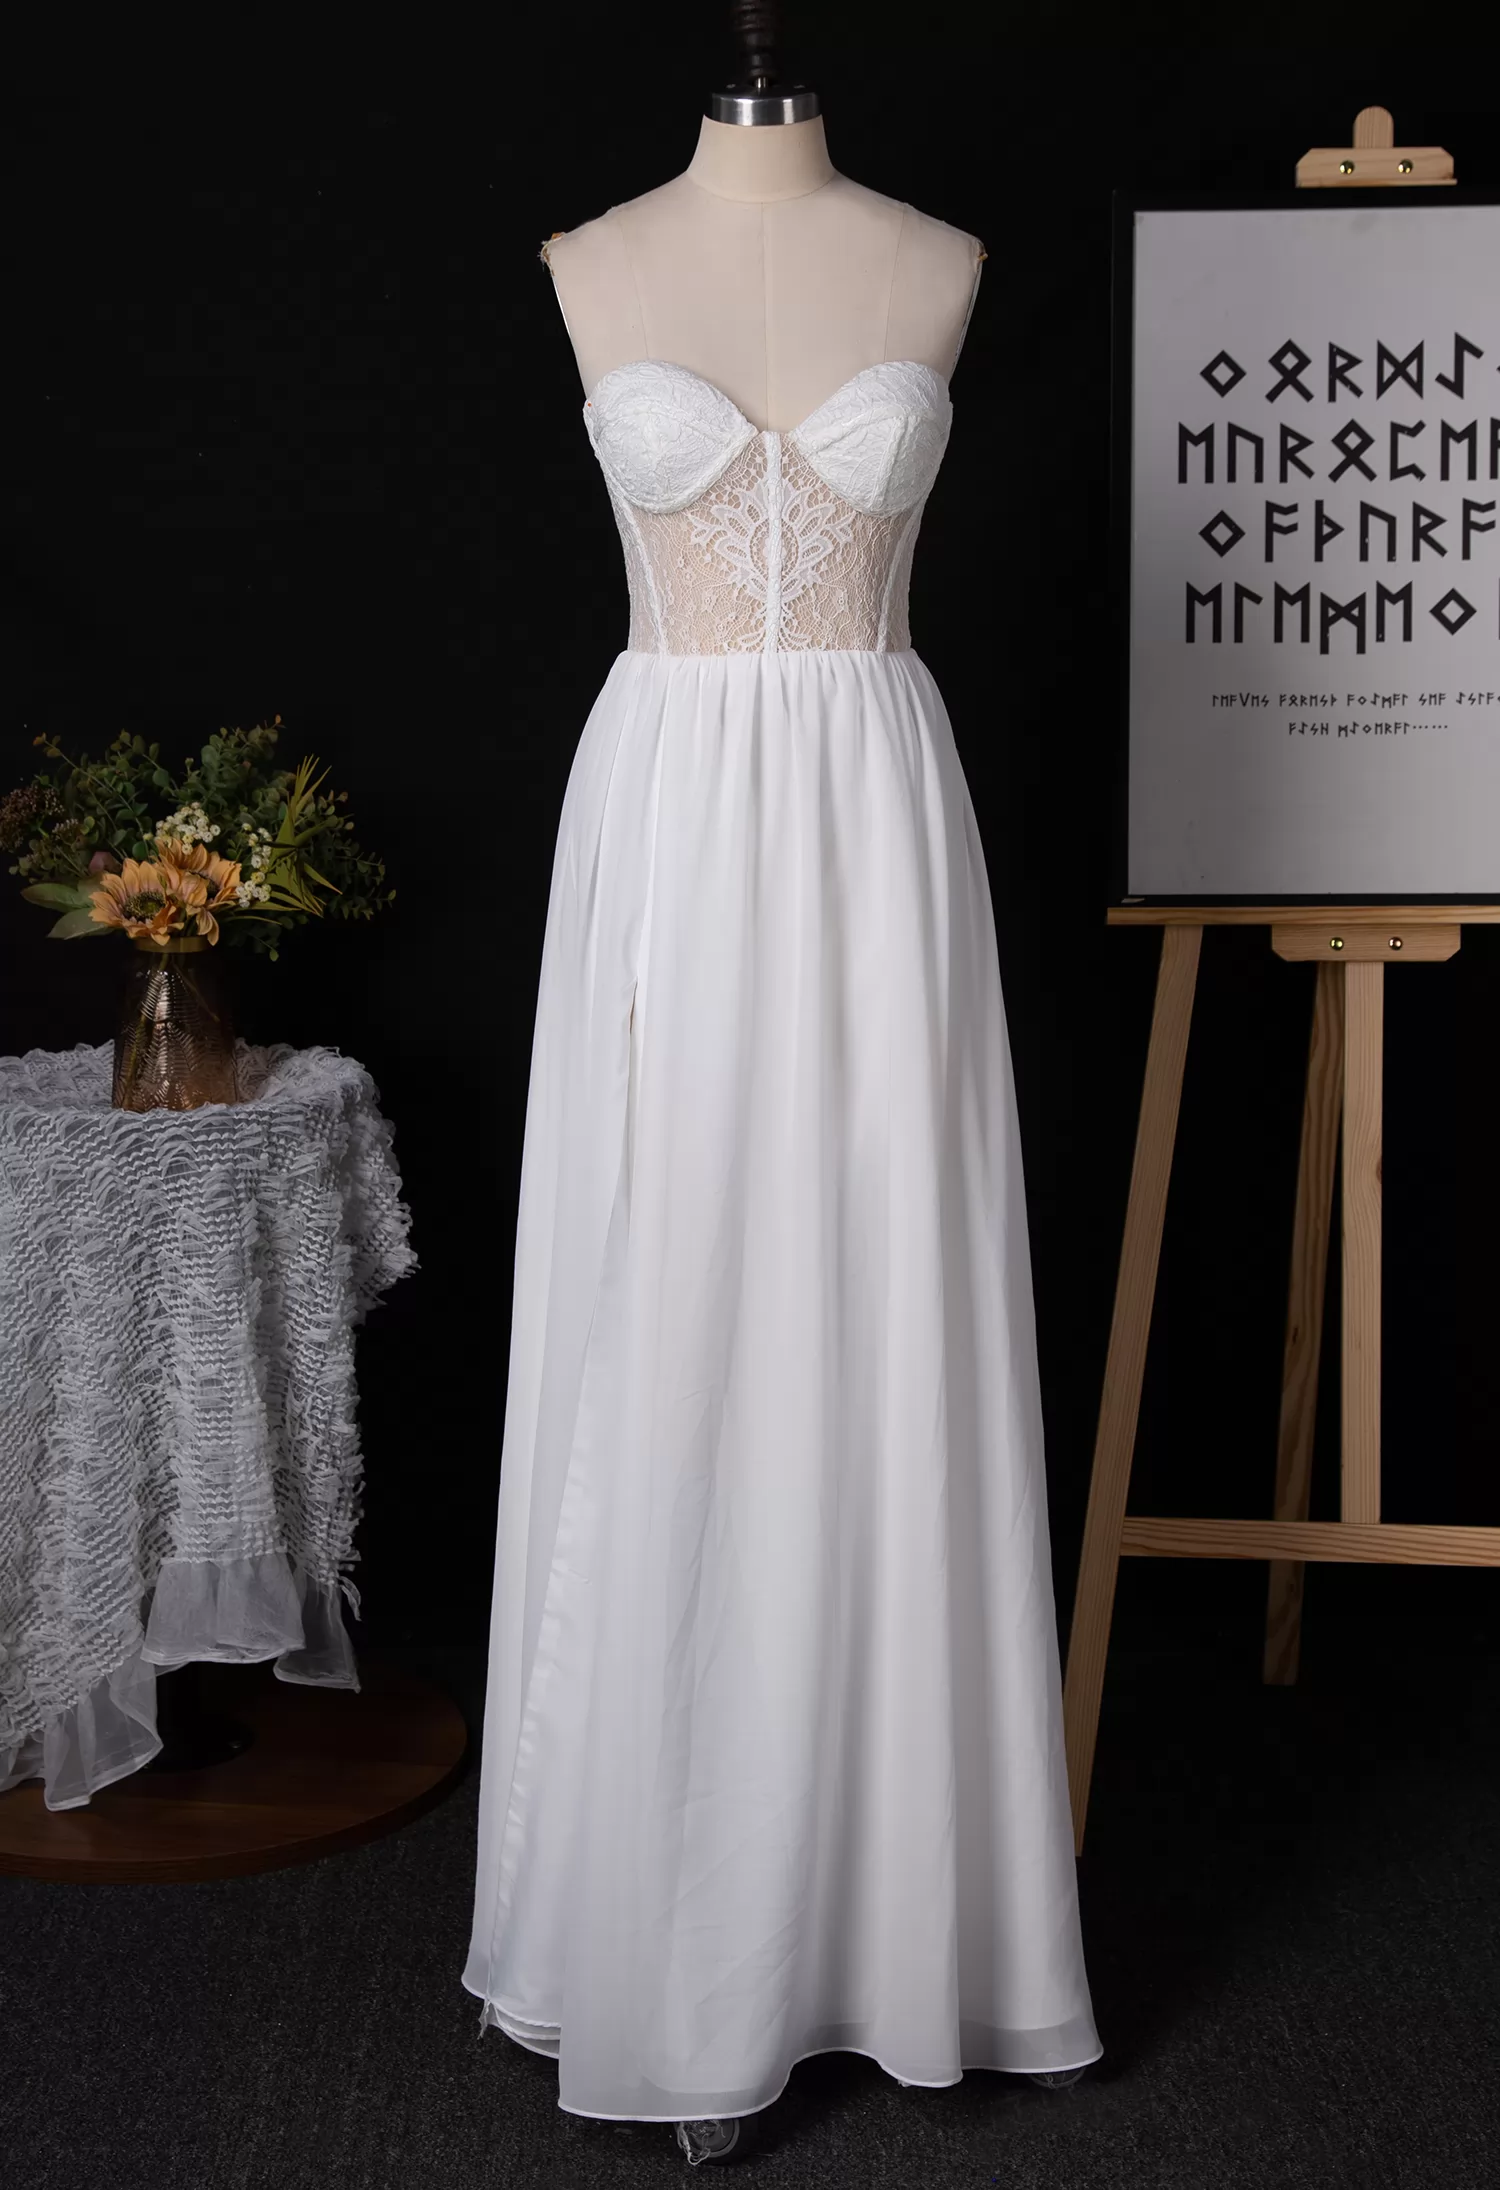 Strapless Sweetheart Chiffon Wedding Dress